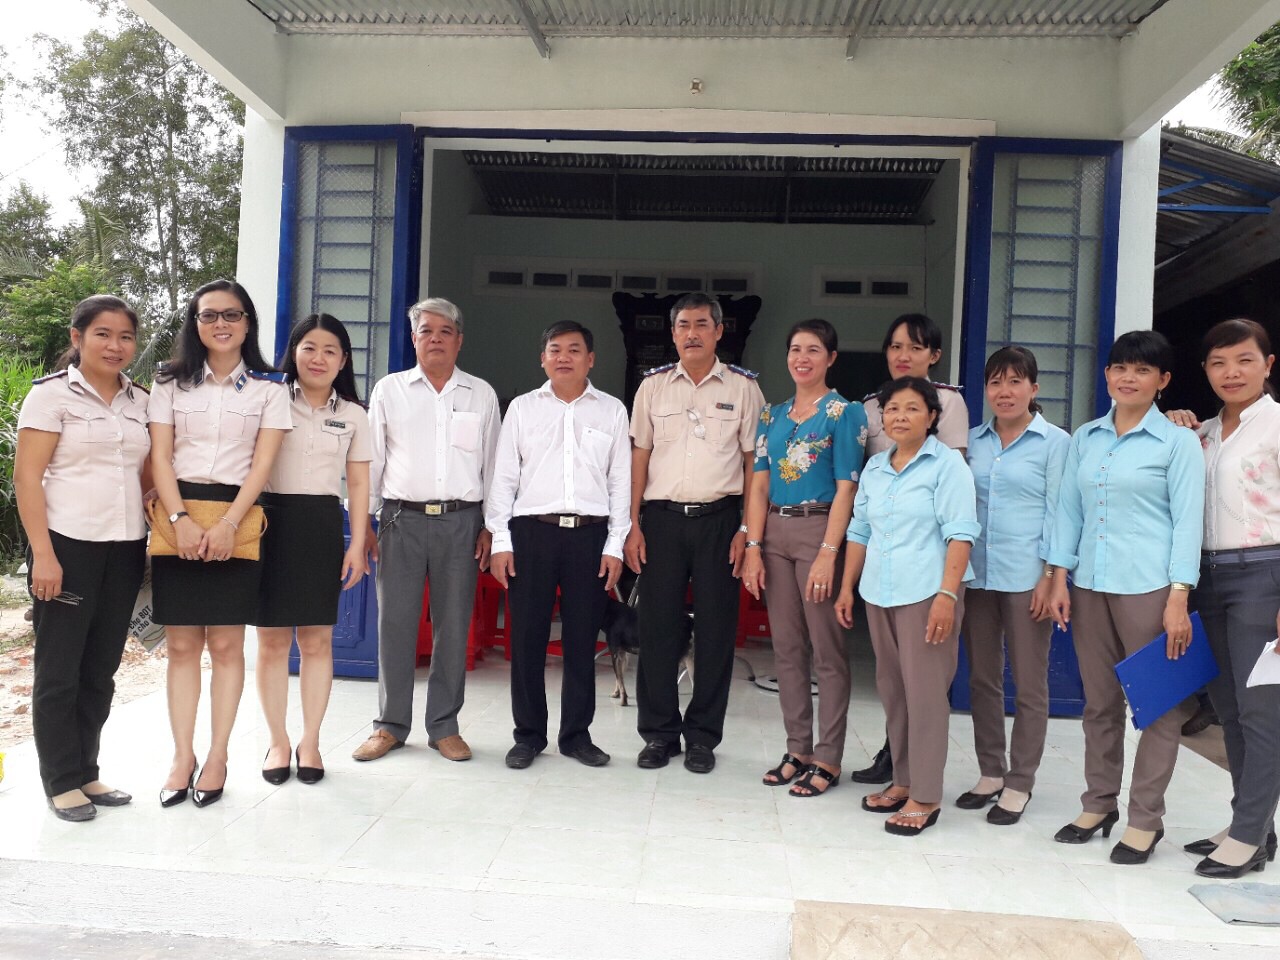 Cục Thi hành án dân sự tỉnh Tây Ninh chung sức xây dựng nông thôn mới năm 2017